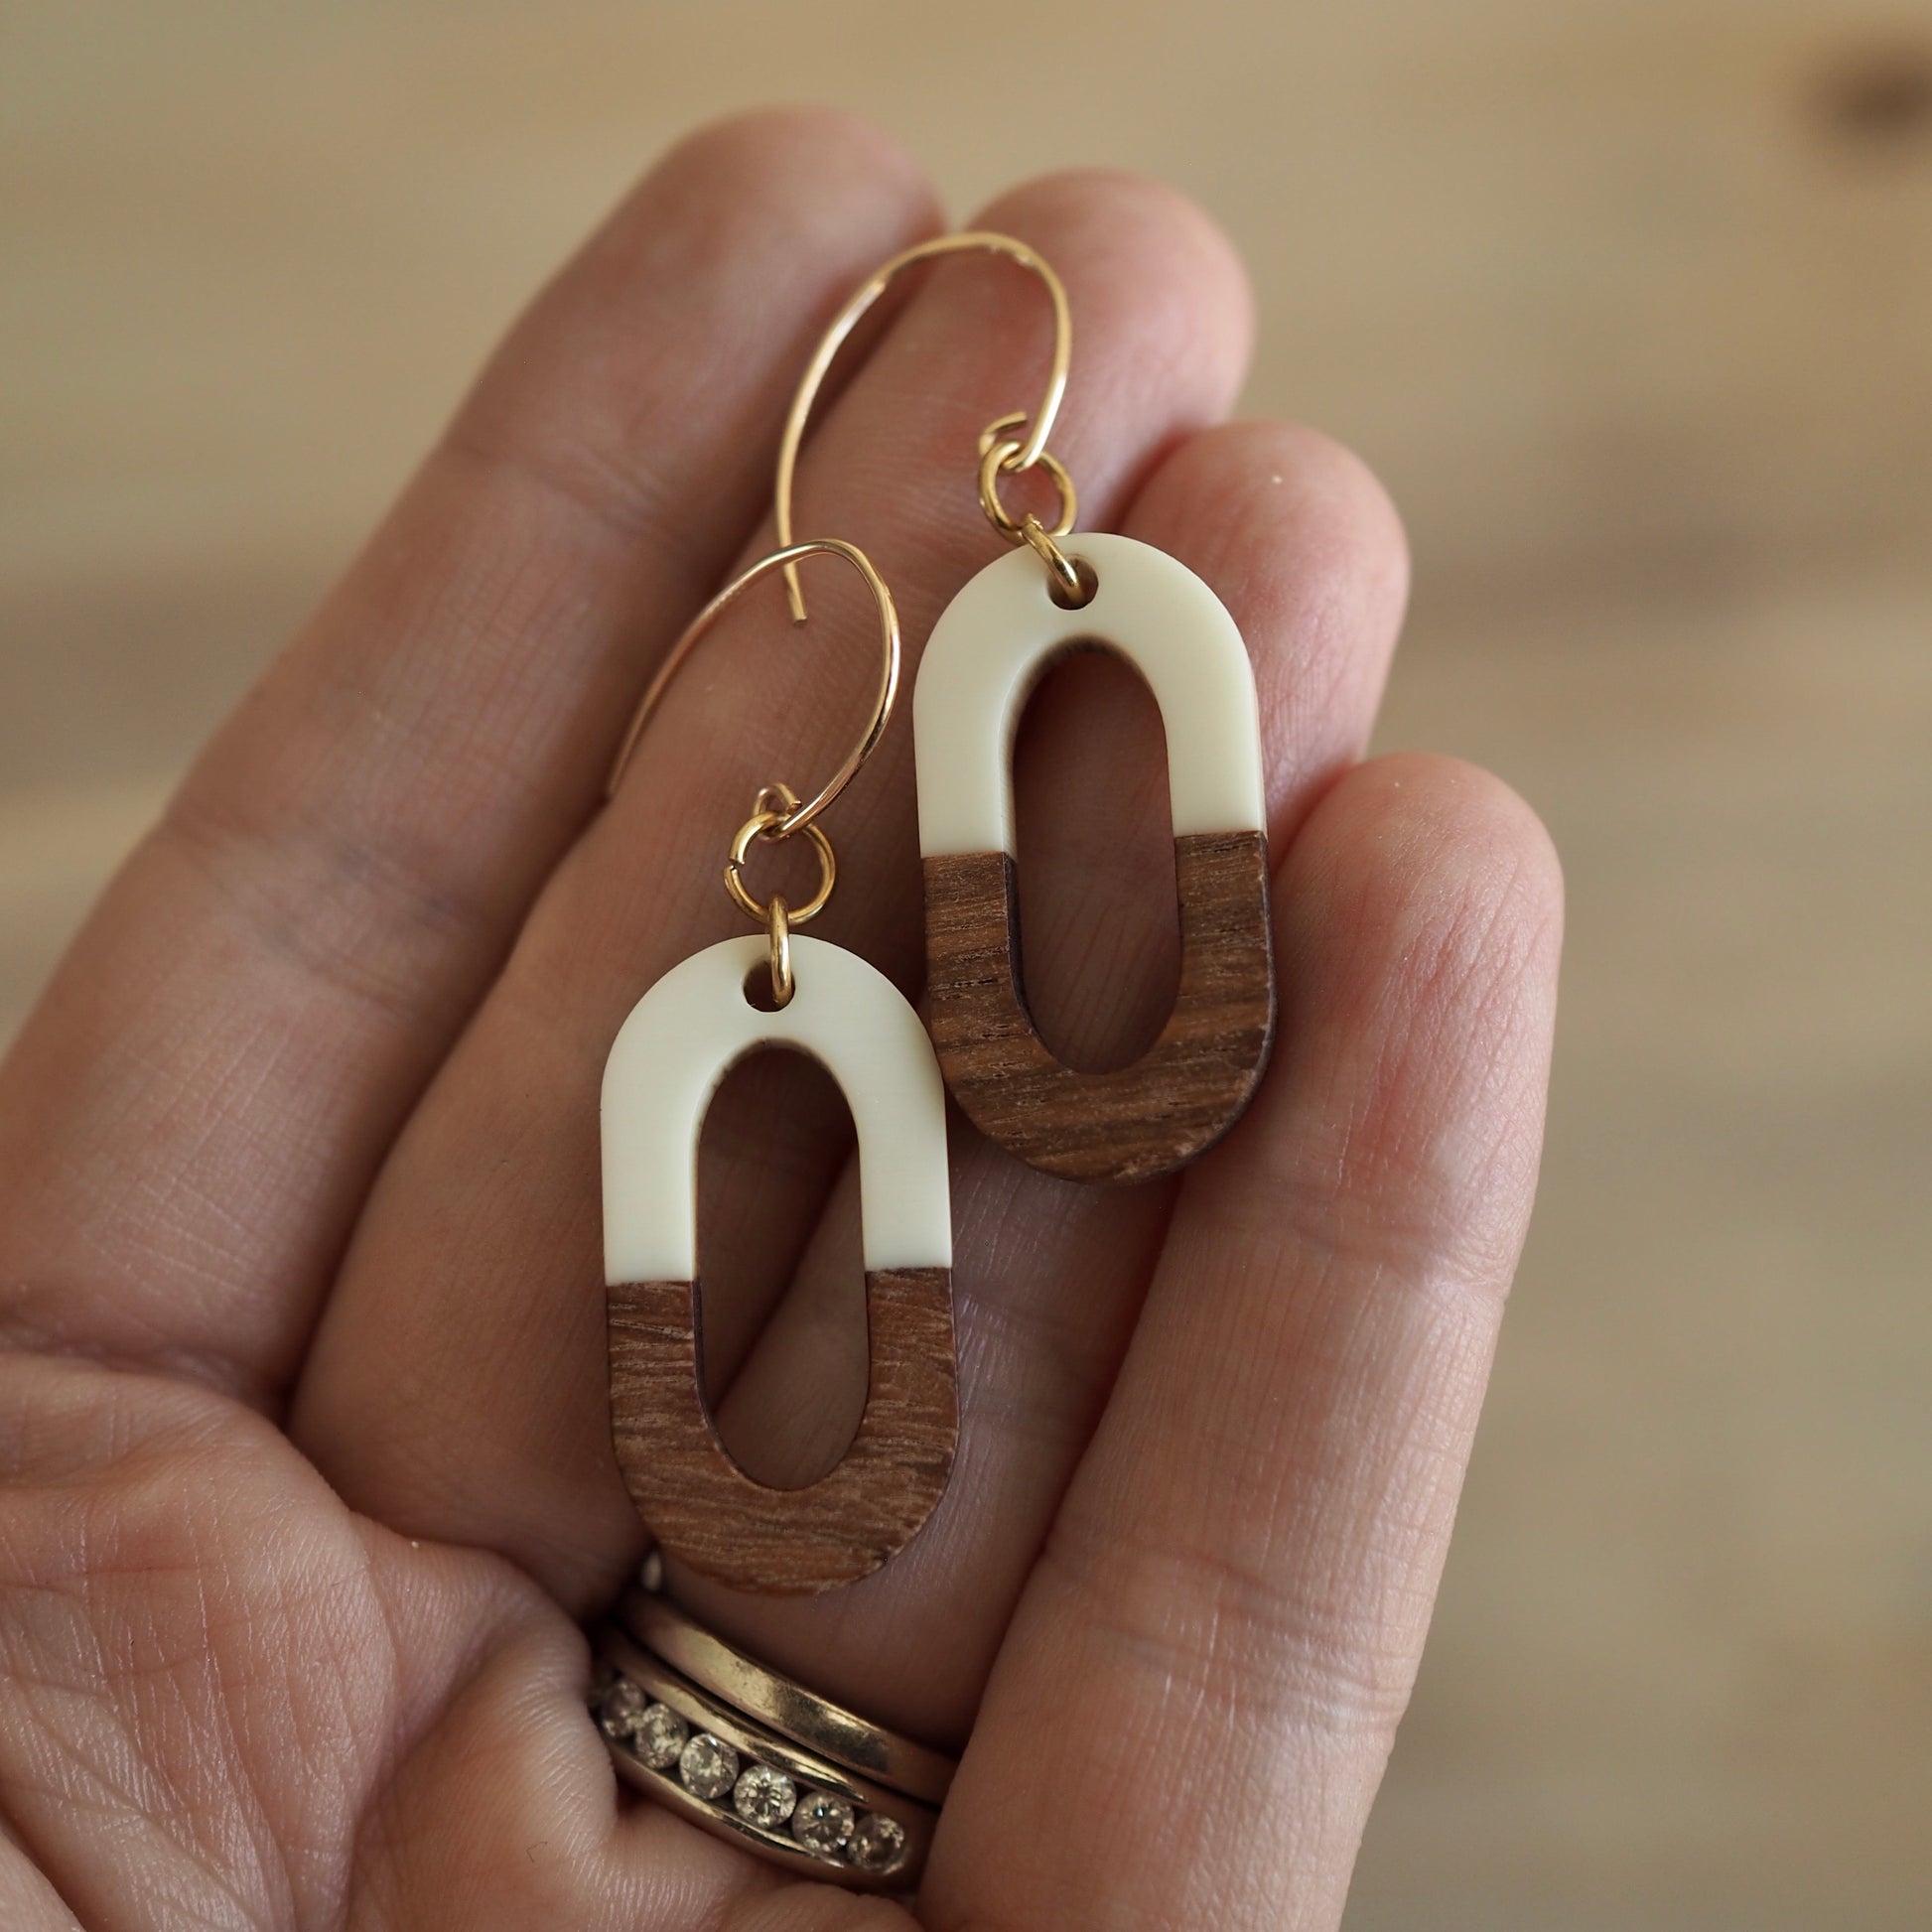 Cream and Wood Earrings by Nancy Wallis Designs